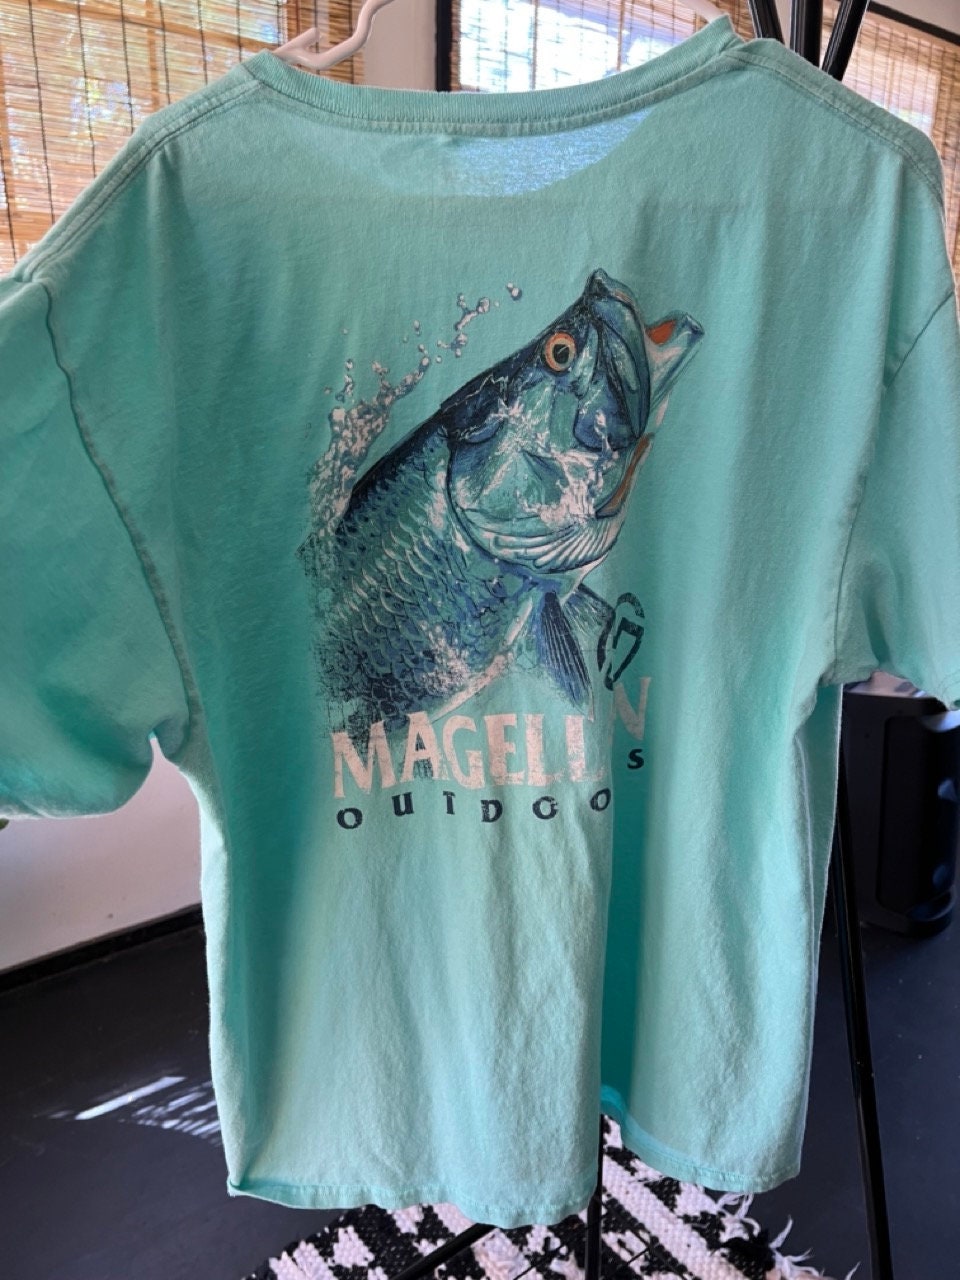 Magellan Outdoors Fishing T-shirt -  Canada